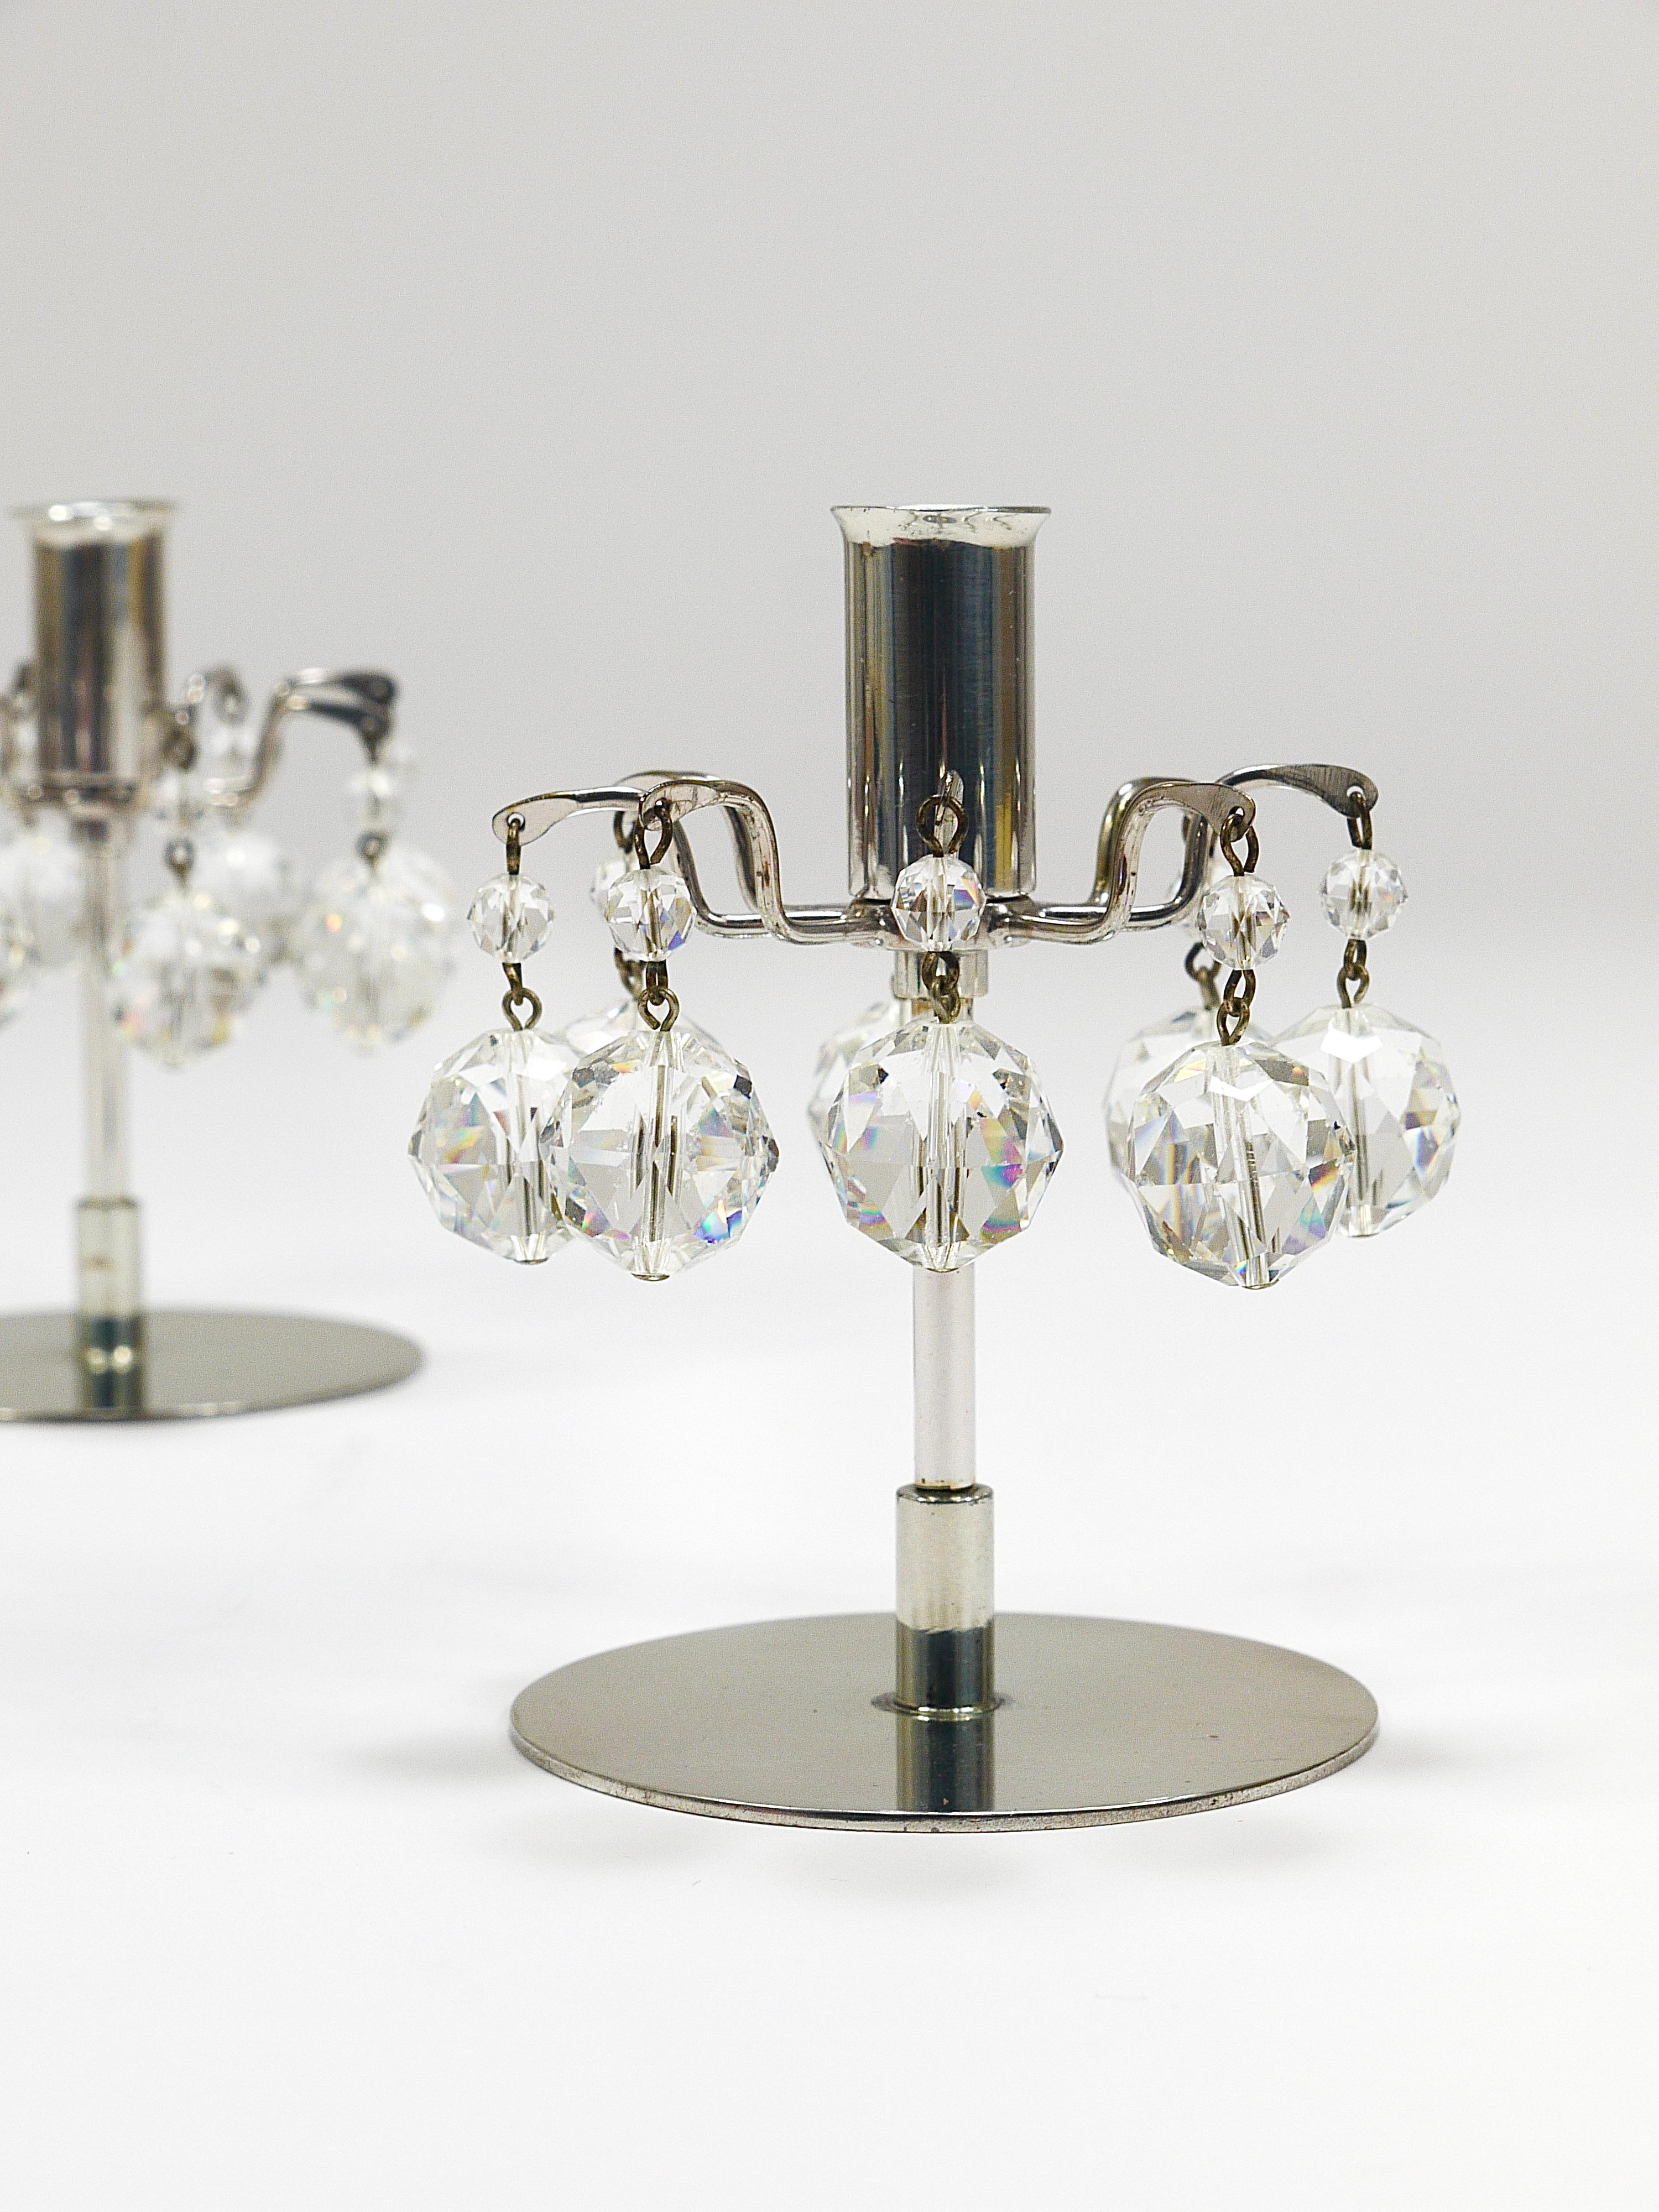 Ravissante paire de petits bougeoirs / chandeliers modernistes du milieu du siècle dernier, conçus en 1963 par Hans Harald Rath et fabriqués par J.L. Lobmeyr Vienne/Autriche dans les années 1980. Fabriquées en laiton nickelé et ornées de cristaux